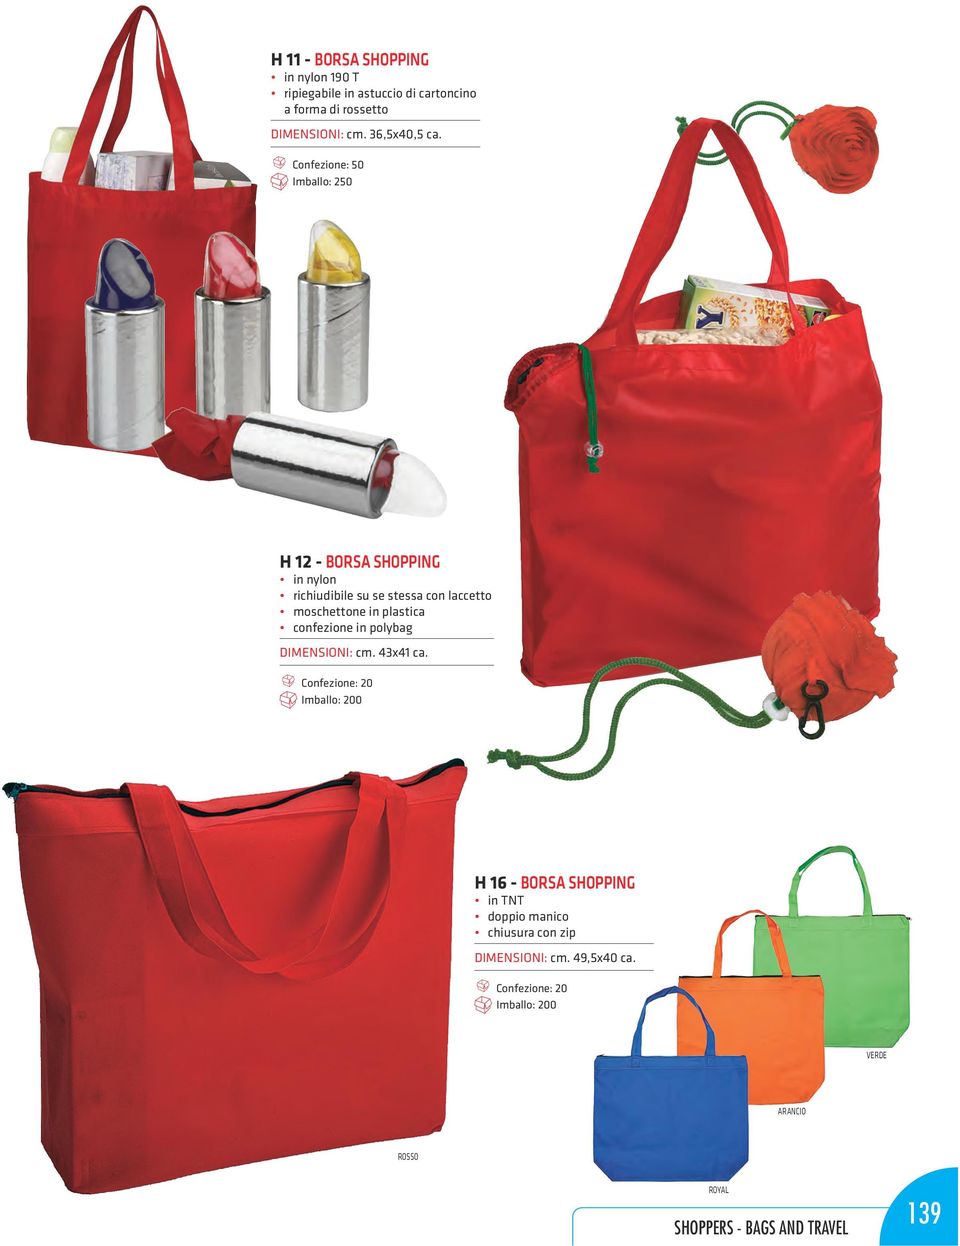 Imballo: 250 H 12 - borsa shopping in nylon richiudibile su se stessa con laccetto moschettone in plastica